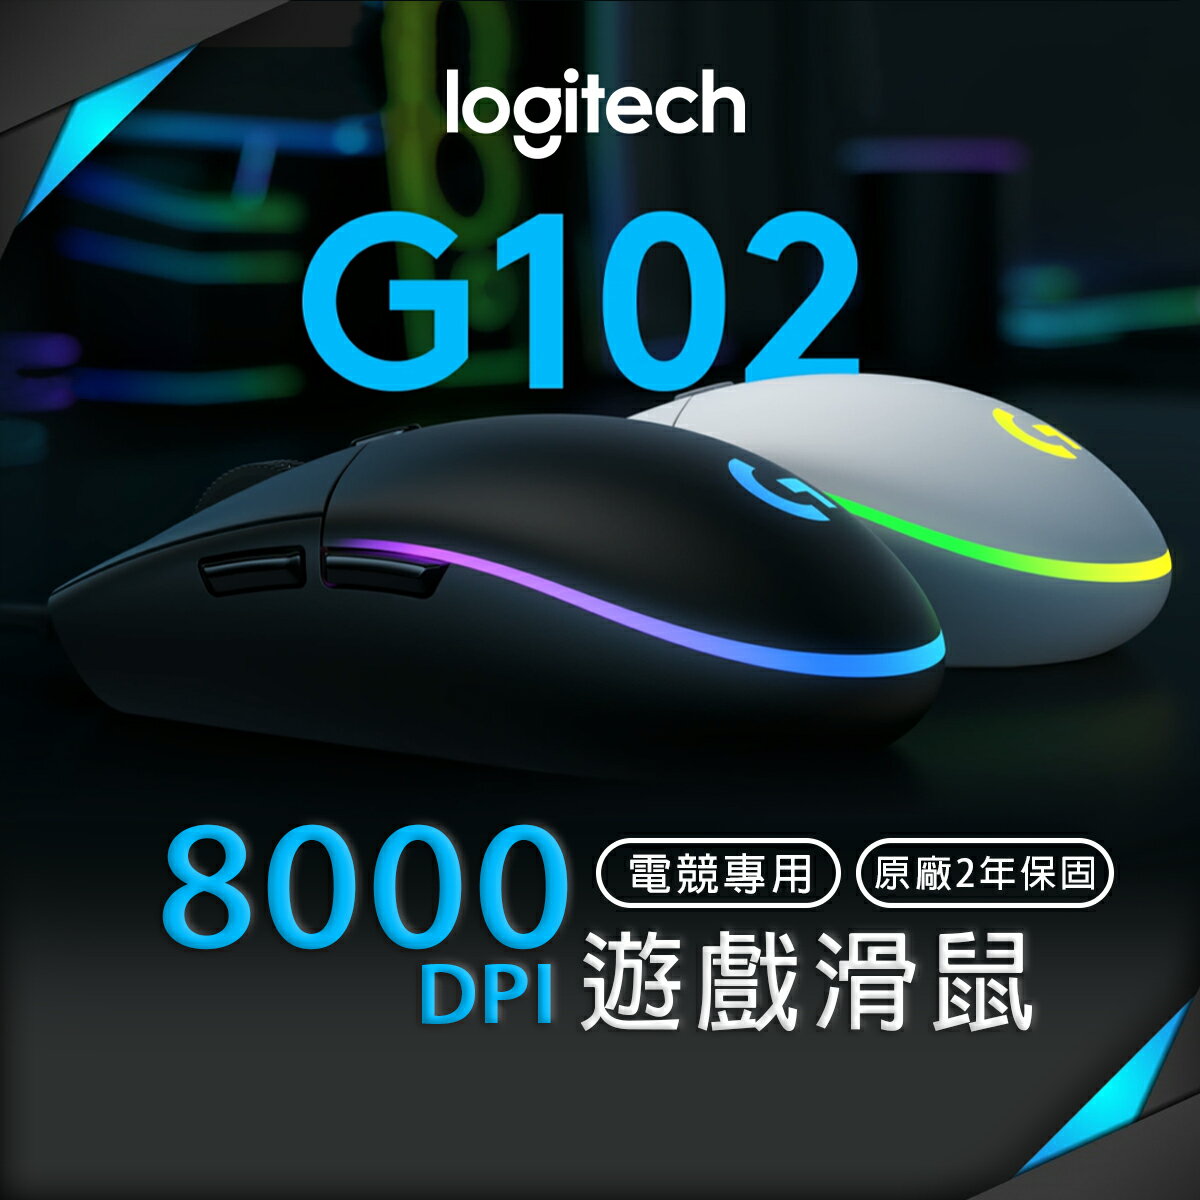 【9%點數】Logitech 羅技 G102 遊戲滑鼠 有線滑鼠 經典六鍵設計 遊戲等級感應器 LIGHTSYNC RGB 色彩波浪【APP下單9%點數回饋】【限定樂天APP下單】